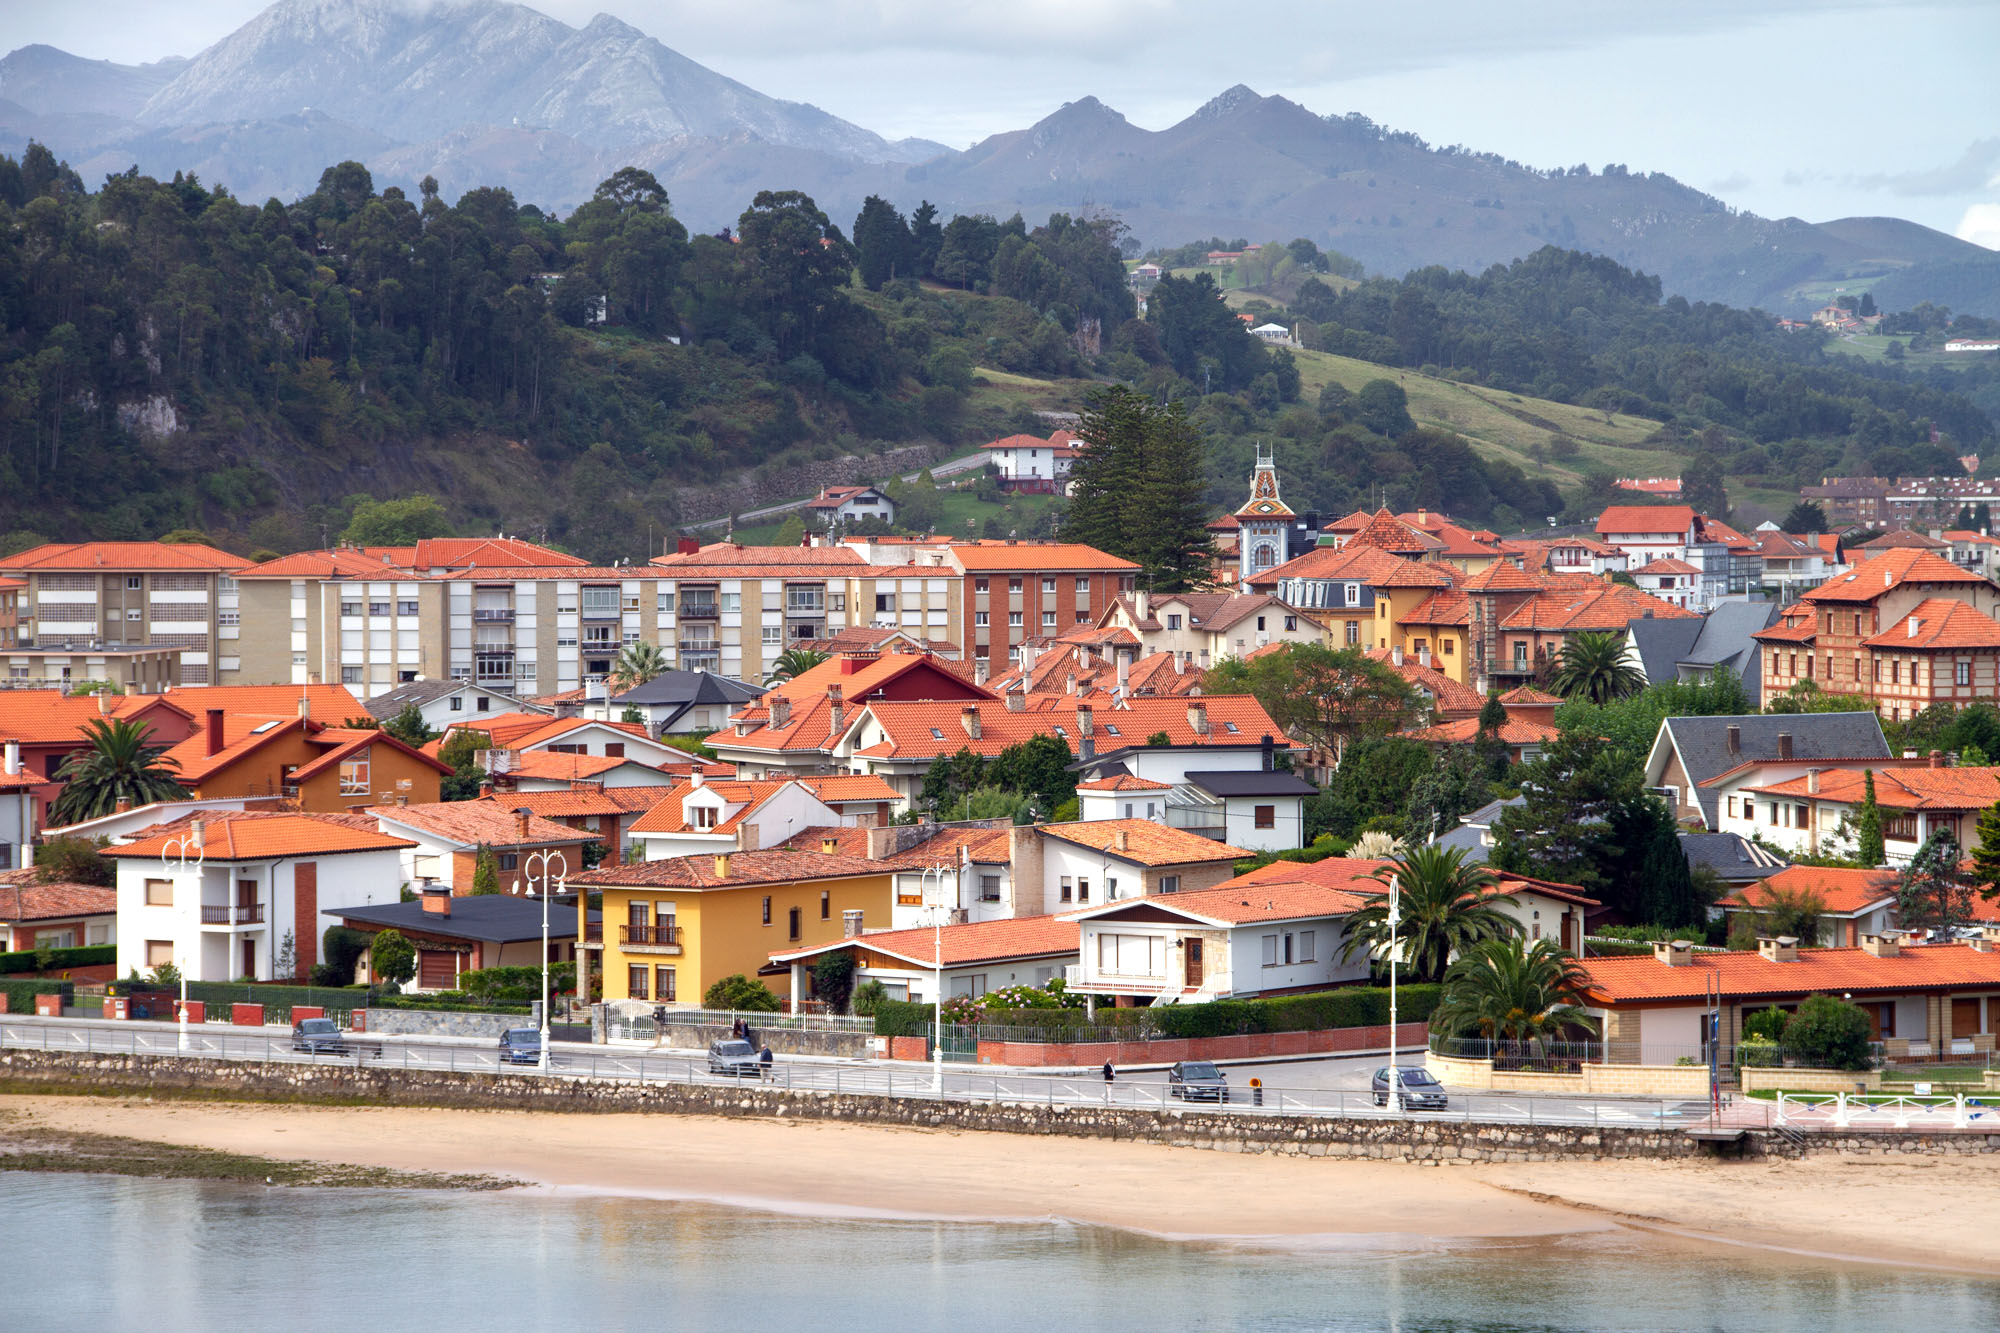 City of Riberdesella Asturias